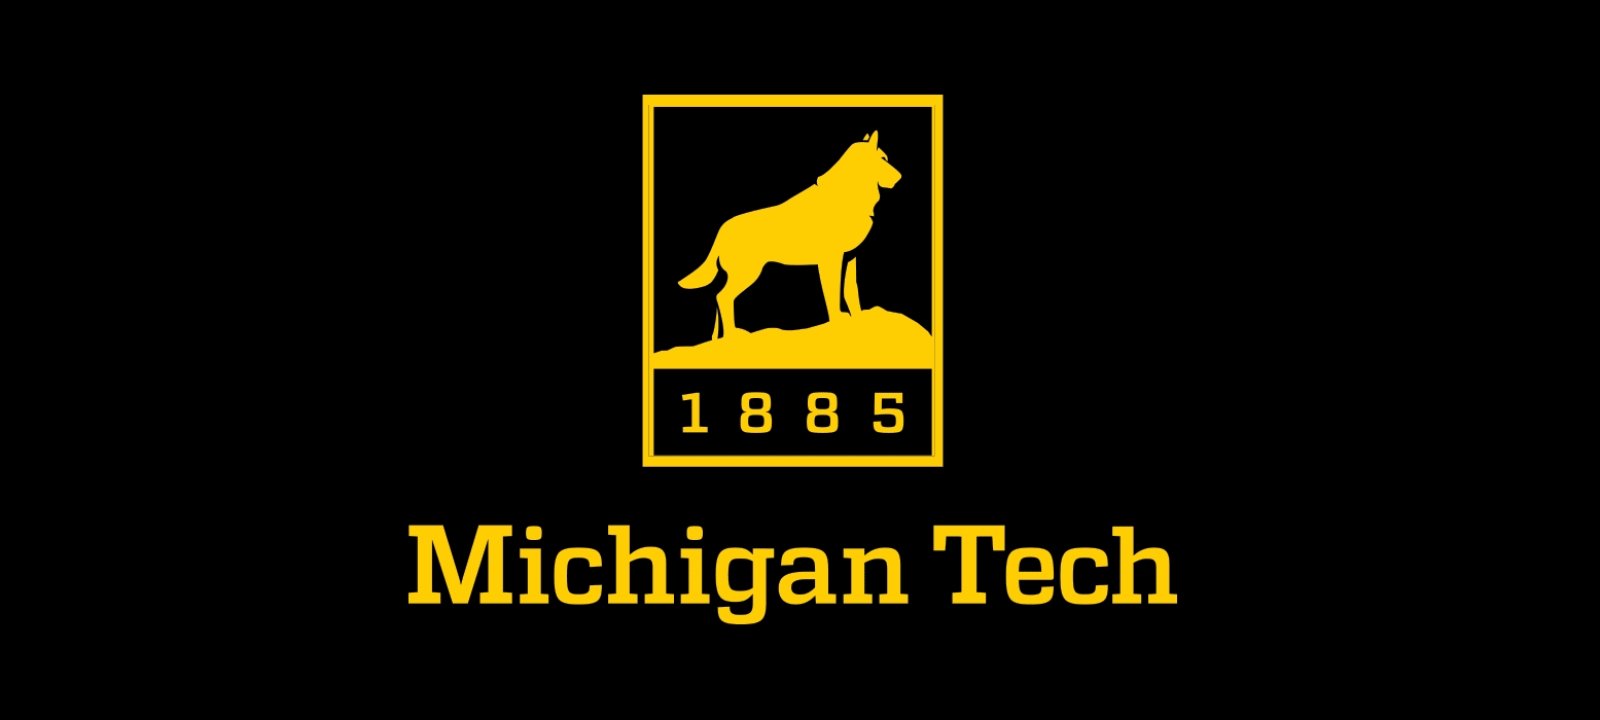 The Michigan Tech logo.